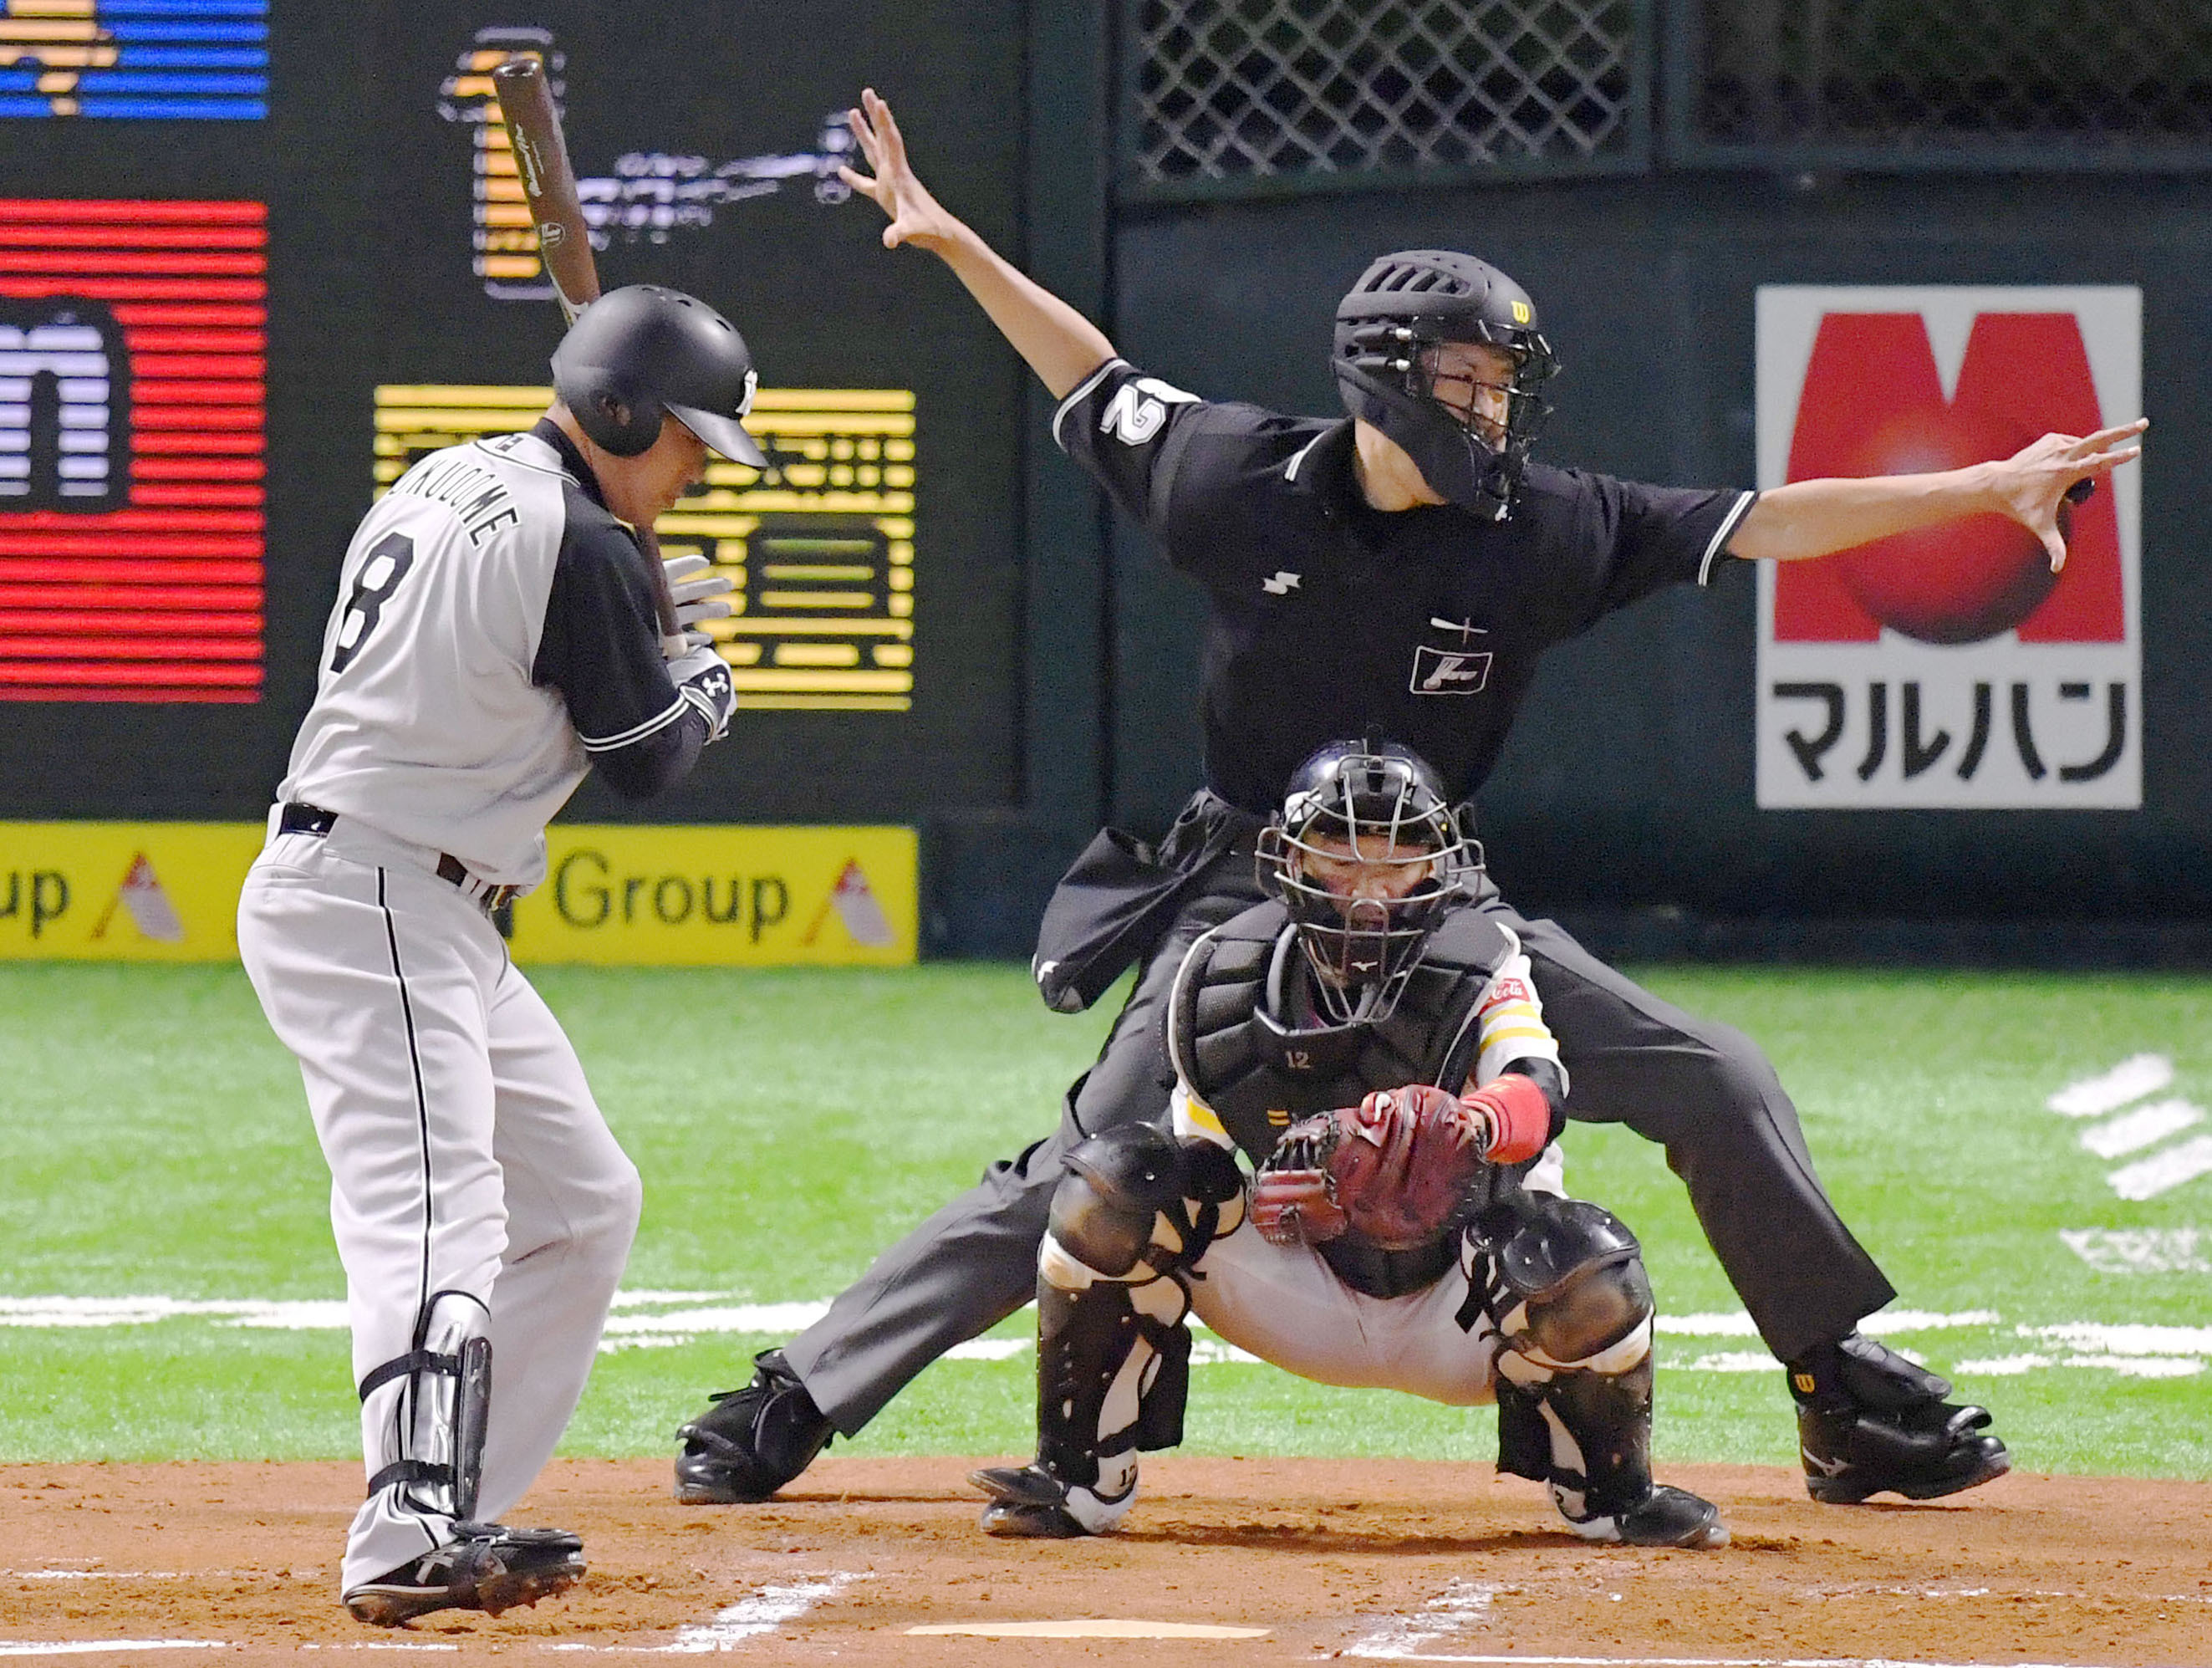 Npb捕手のフレーミング能力に迫る 北海道日本ハム Baseball Gate